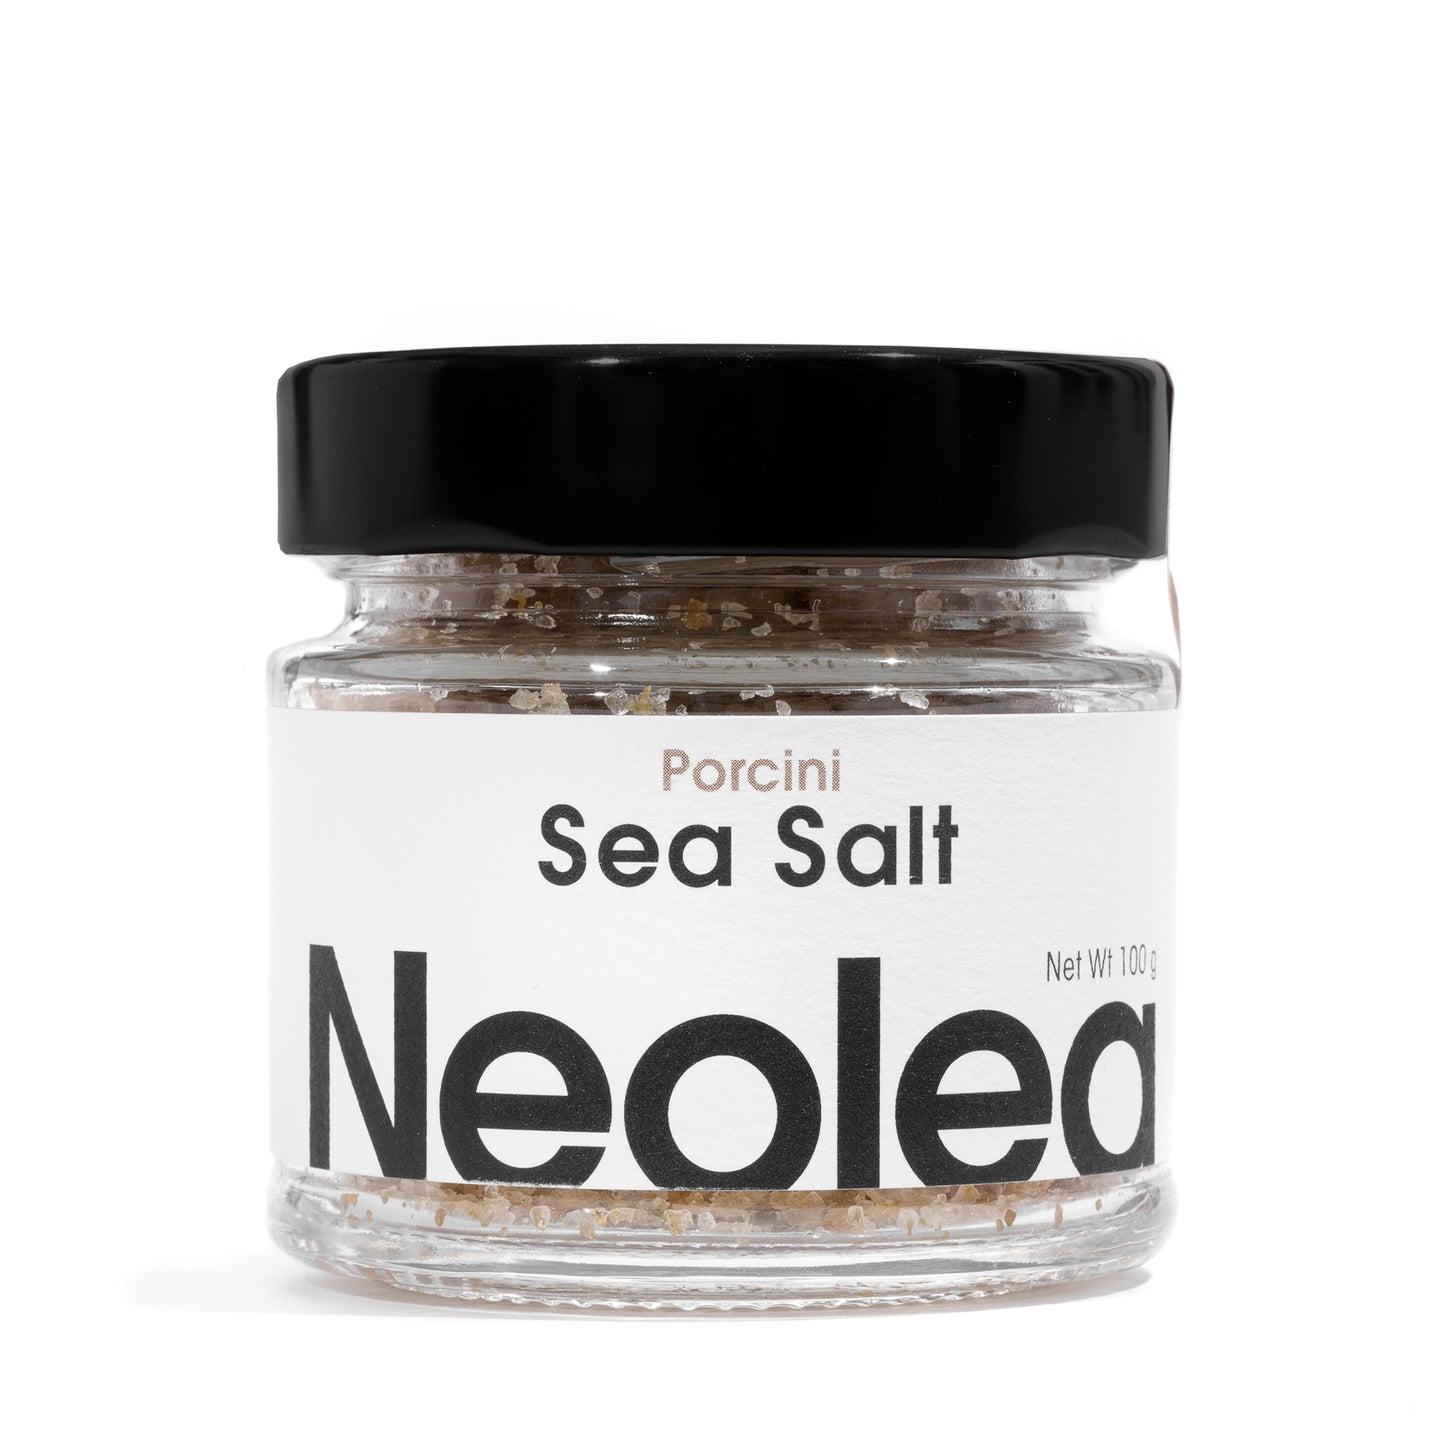 Neolea Sea Salt Porcini